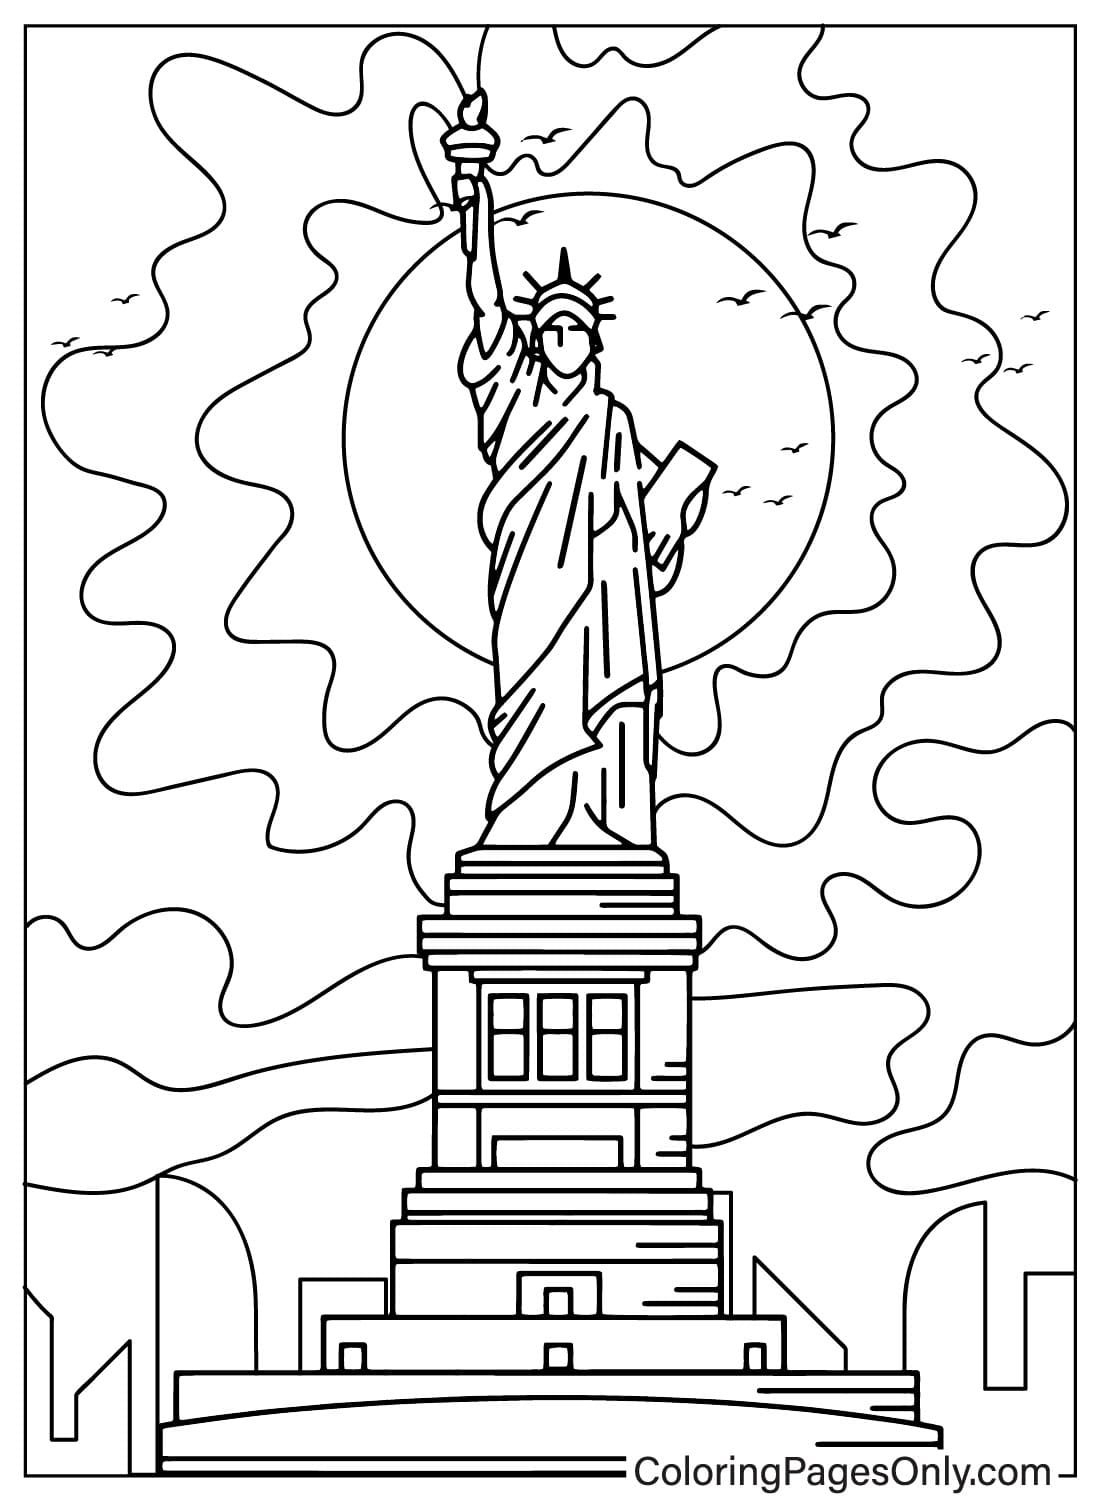 Disegni da colorare Statua della Libertà per bambini